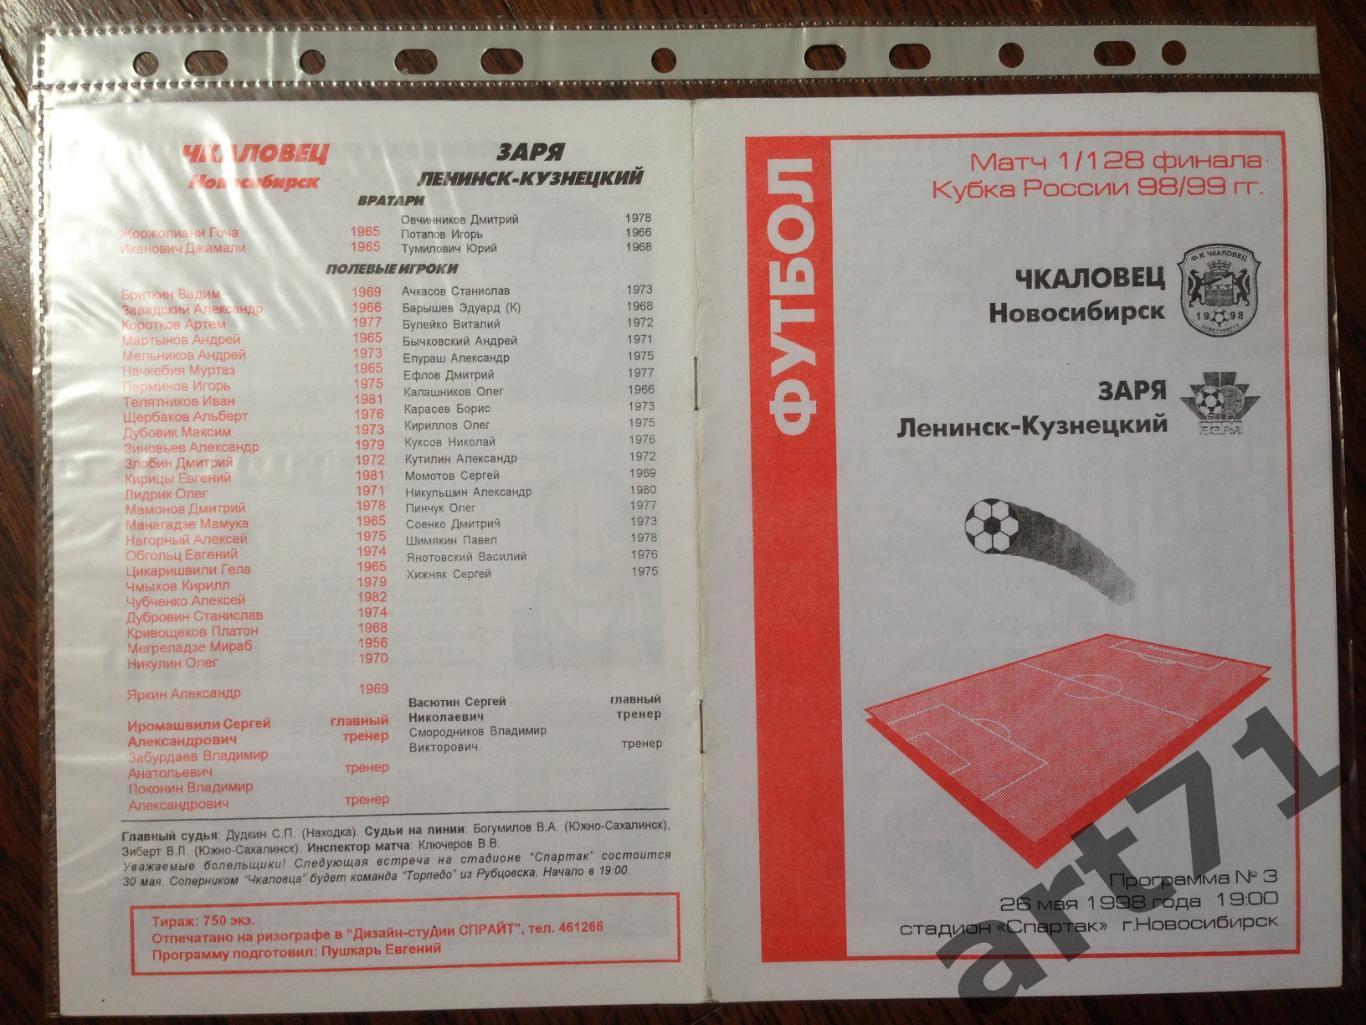 + Чкаловец Новосибирск - Заря Ленинск-Кузнецкий 1998 Кубок России